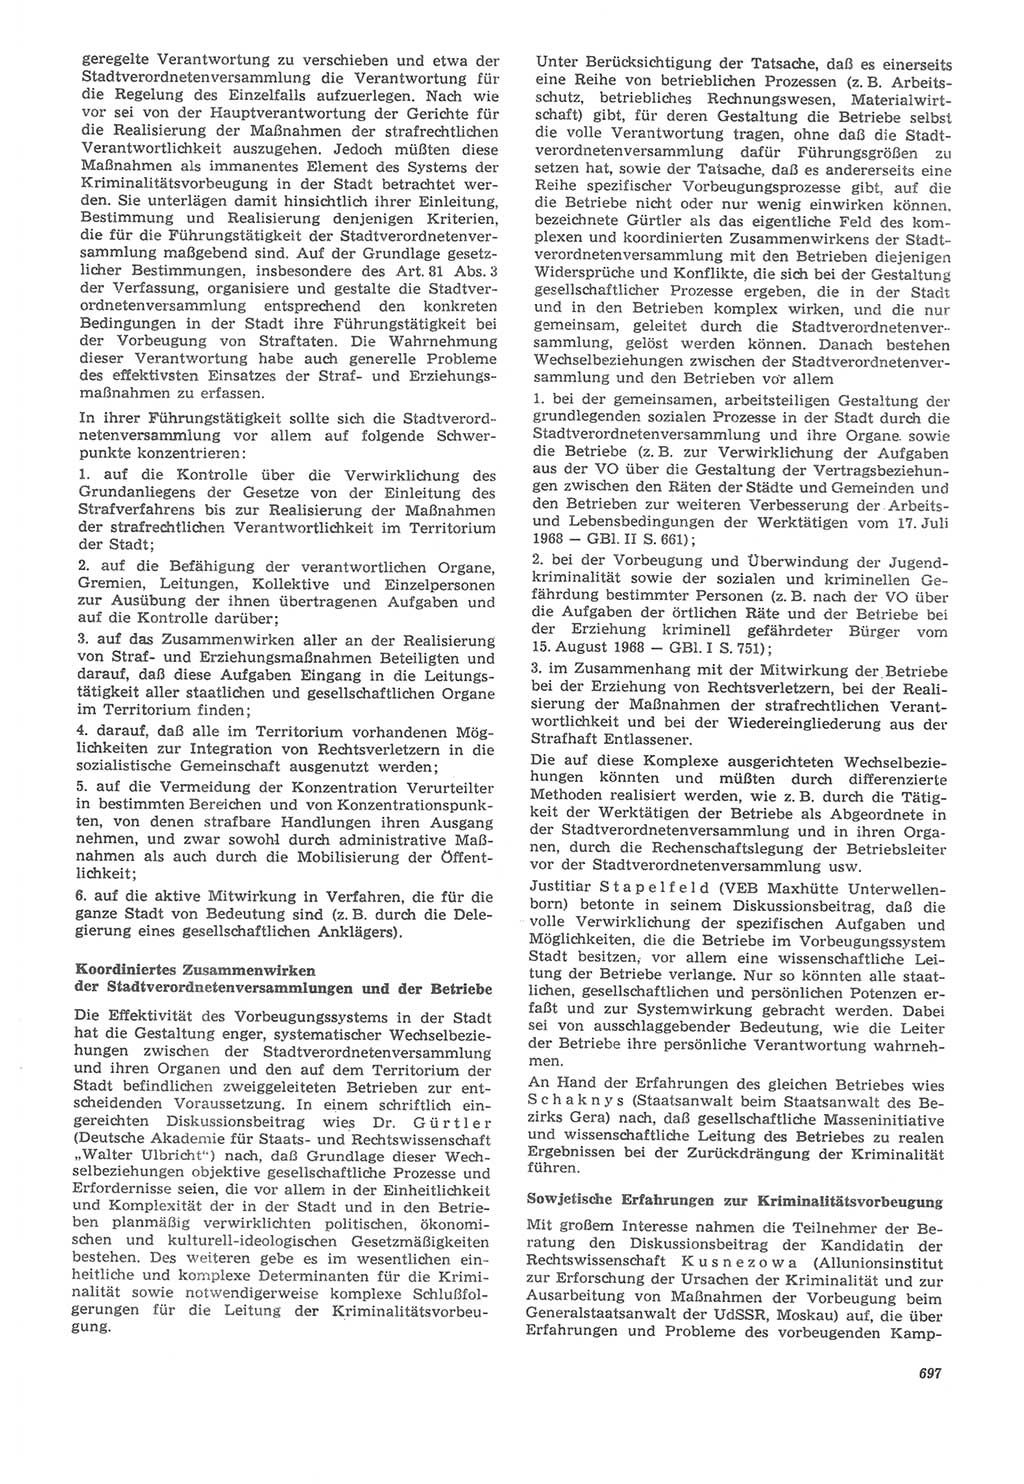 Neue Justiz (NJ), Zeitschrift für Recht und Rechtswissenschaft [Deutsche Demokratische Republik (DDR)], 22. Jahrgang 1968, Seite 697 (NJ DDR 1968, S. 697)